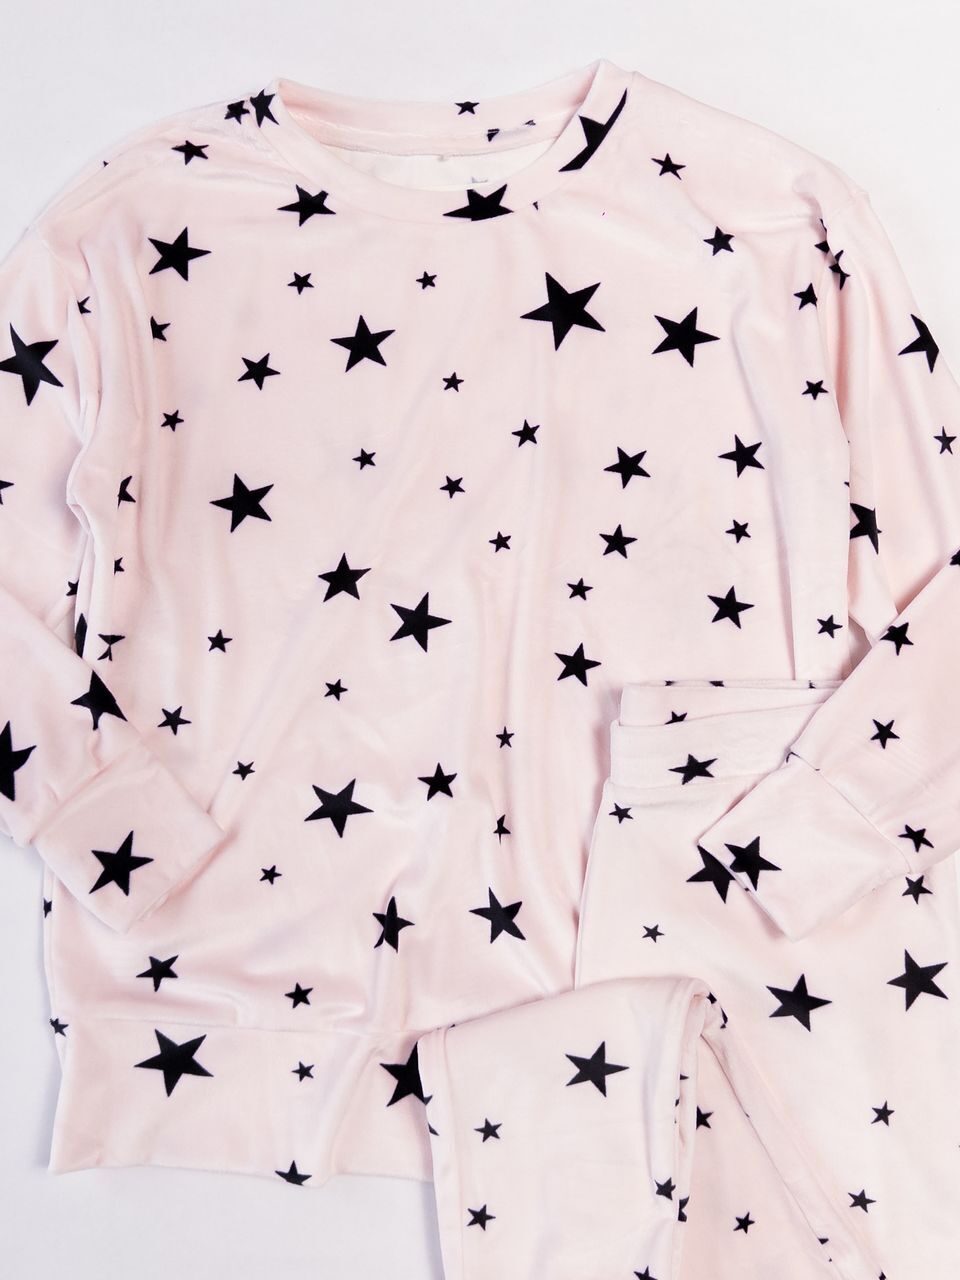 Комплект женский велюровый домашний джемпер + брюки цвет розовый с принтом размер UK 8-10 (rus 42-44) George